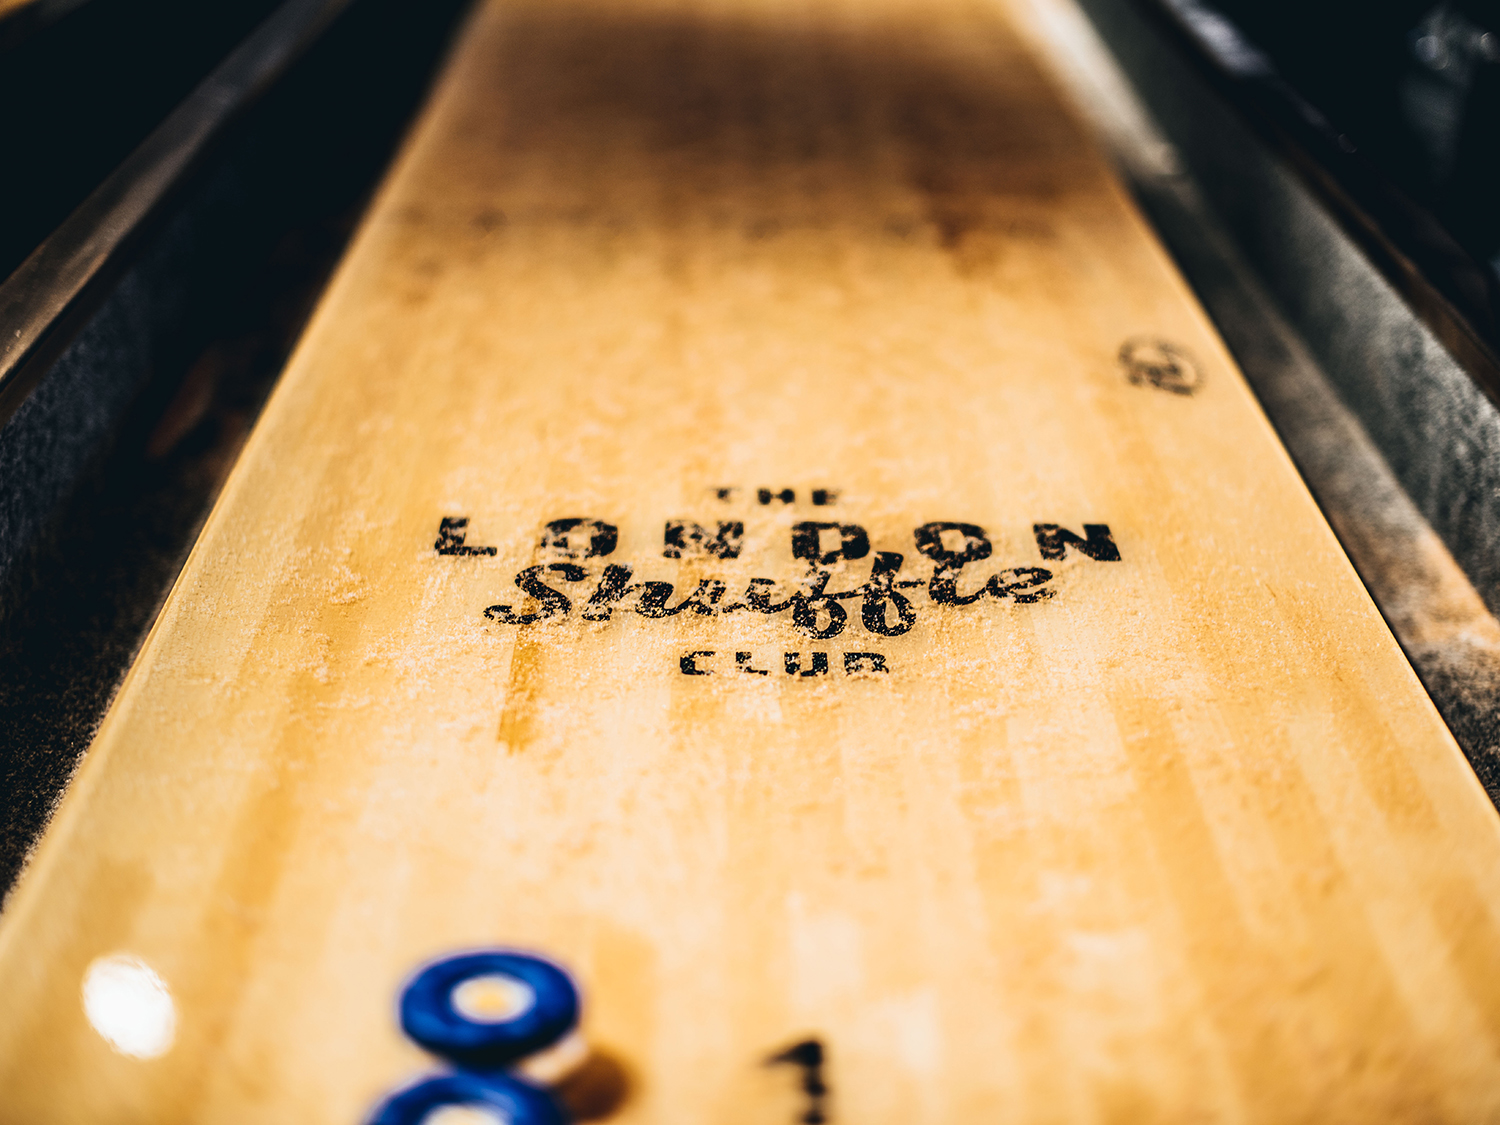 Shuffleboarding at The London Shuffle Club Things to do in London